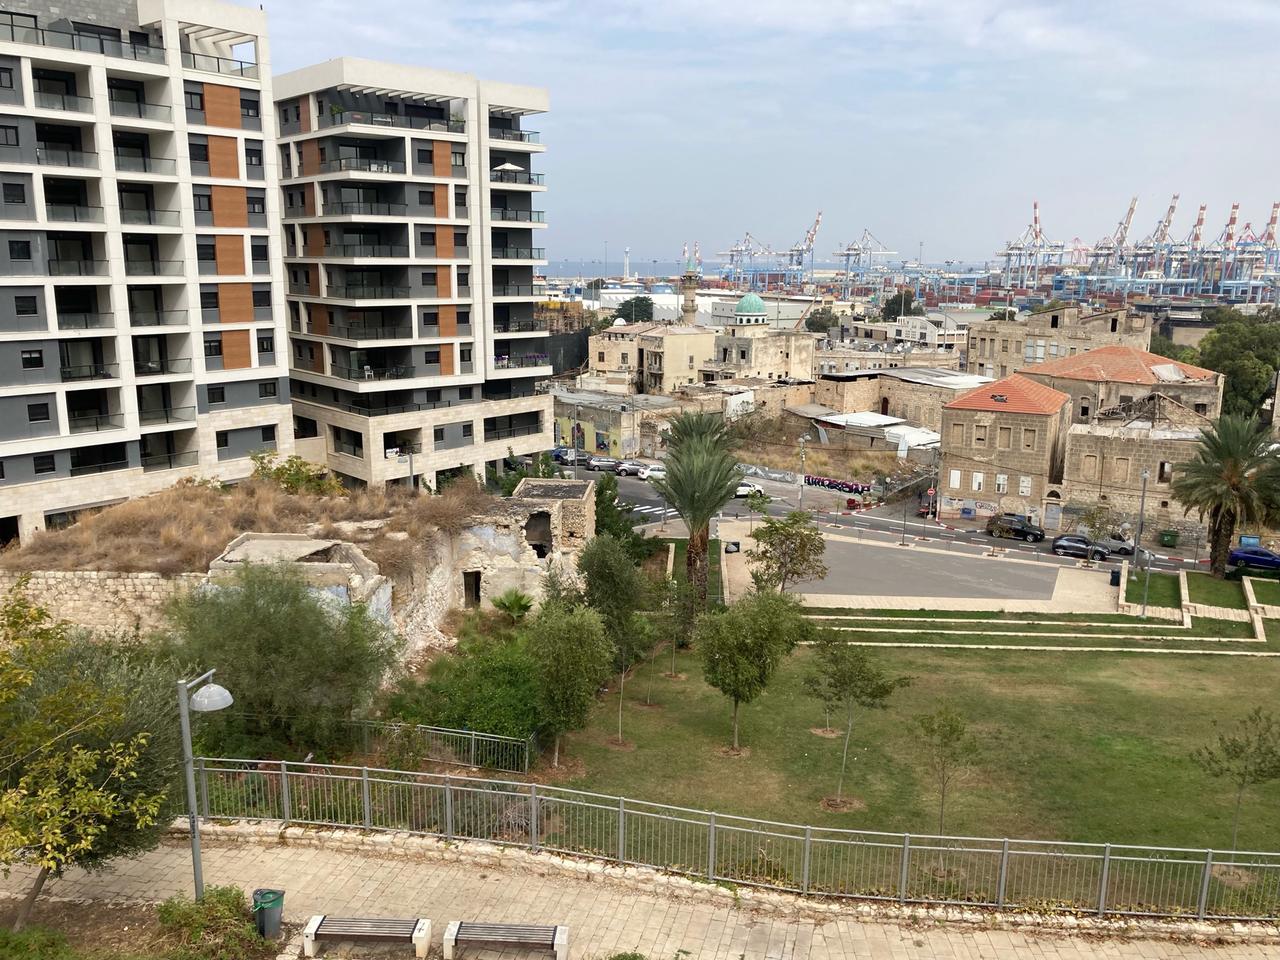 Das ehemalige palästinensische Viertel Wadi Salib in Haifa. Die meisten der alten Gebäude stehen leer. Neubauten sind wohlhabenden Bürgern vorbehalten.